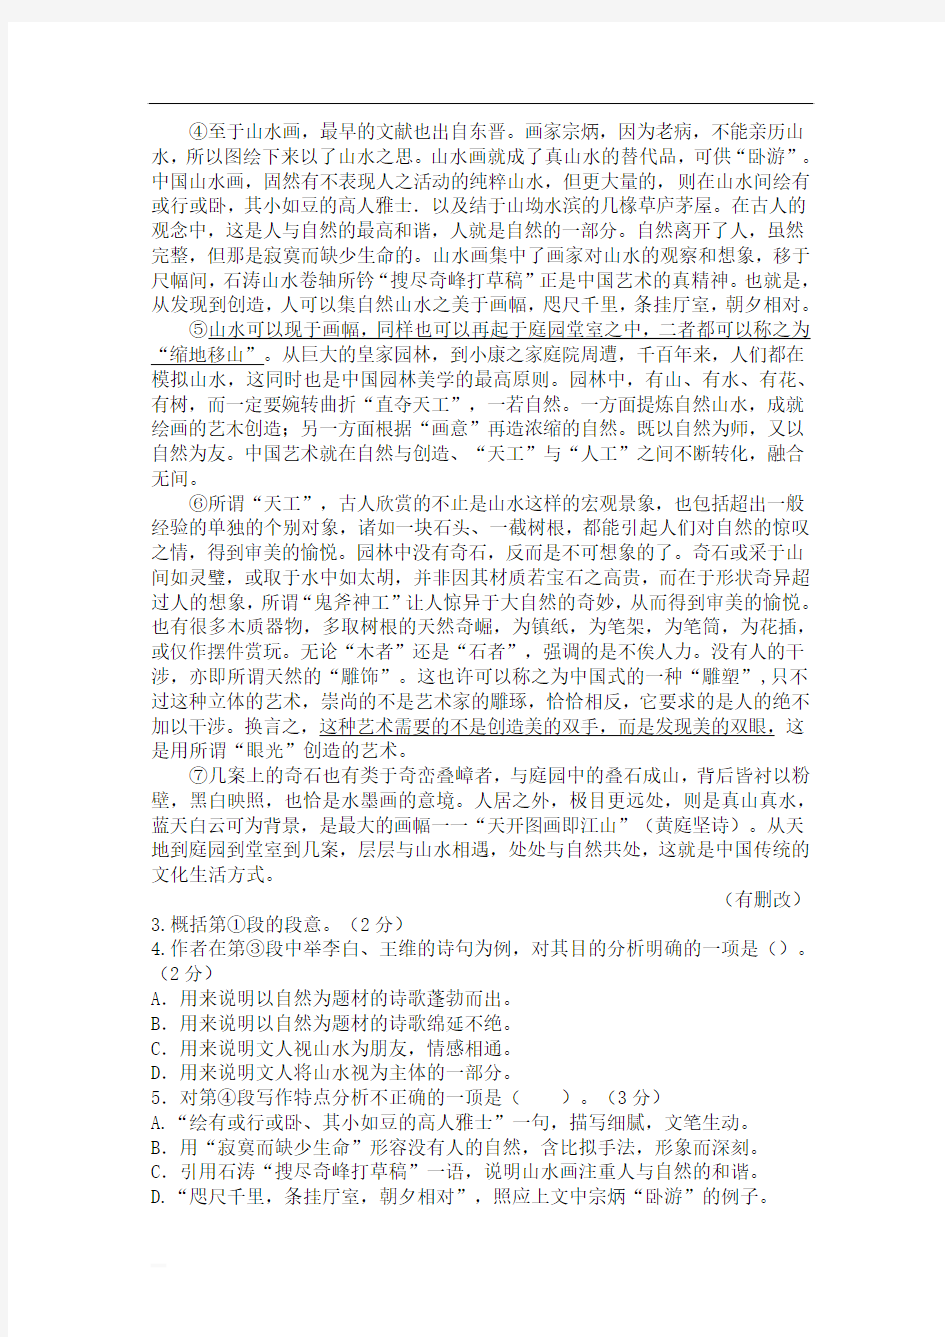 2017年上海语文高考试题(含答案)